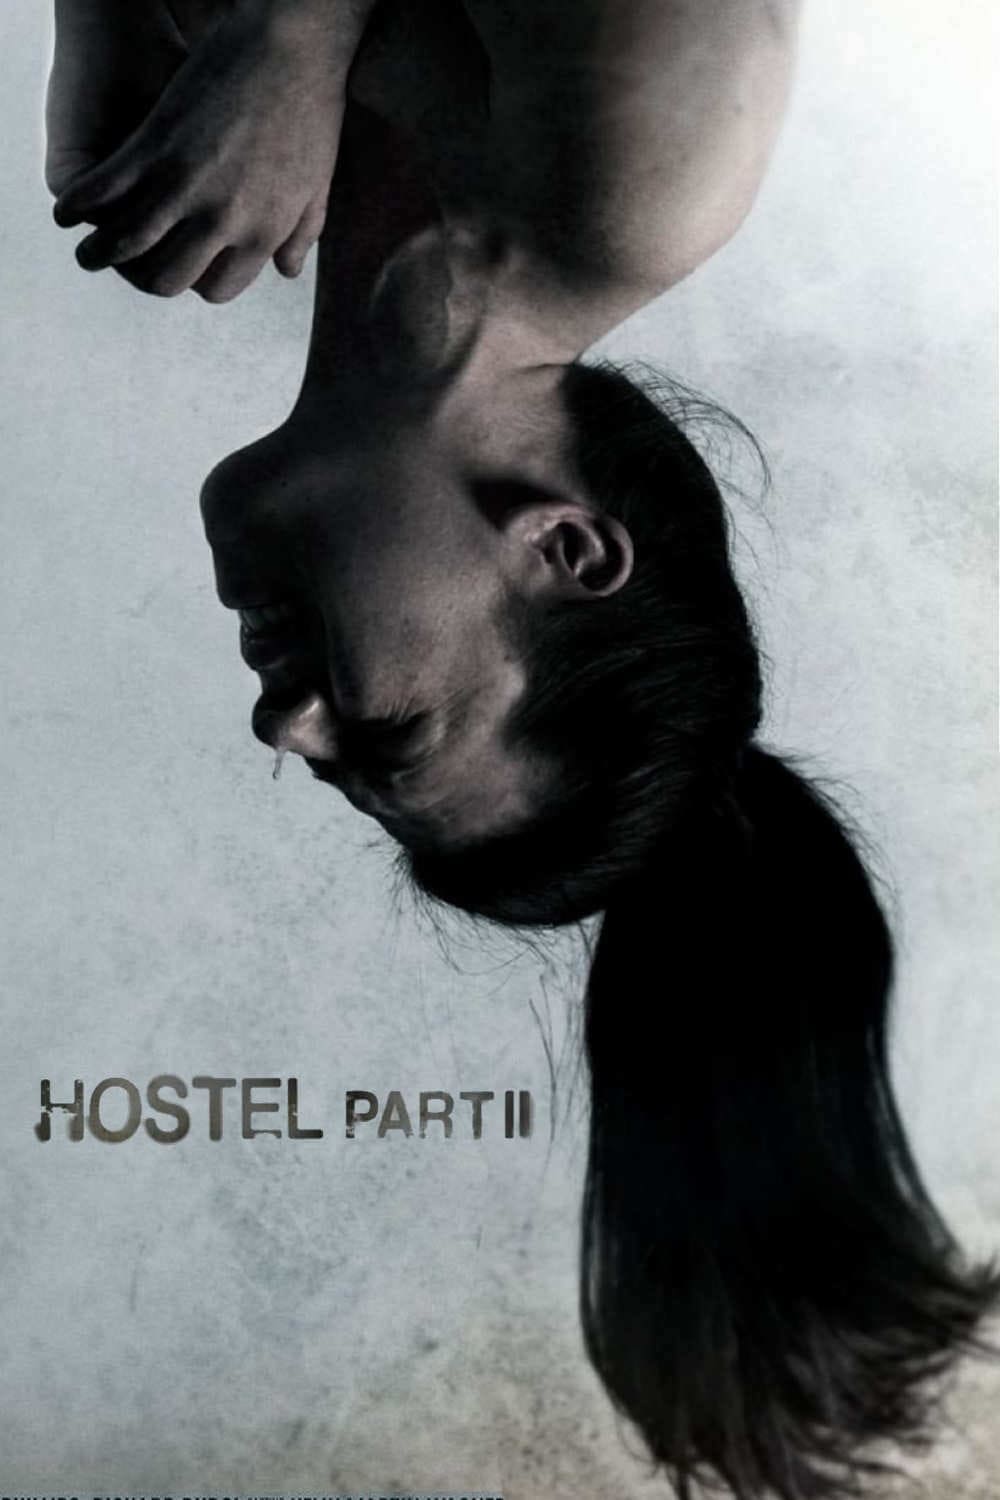 Lò Mổ 2 (Hostel: Part II) [2007]